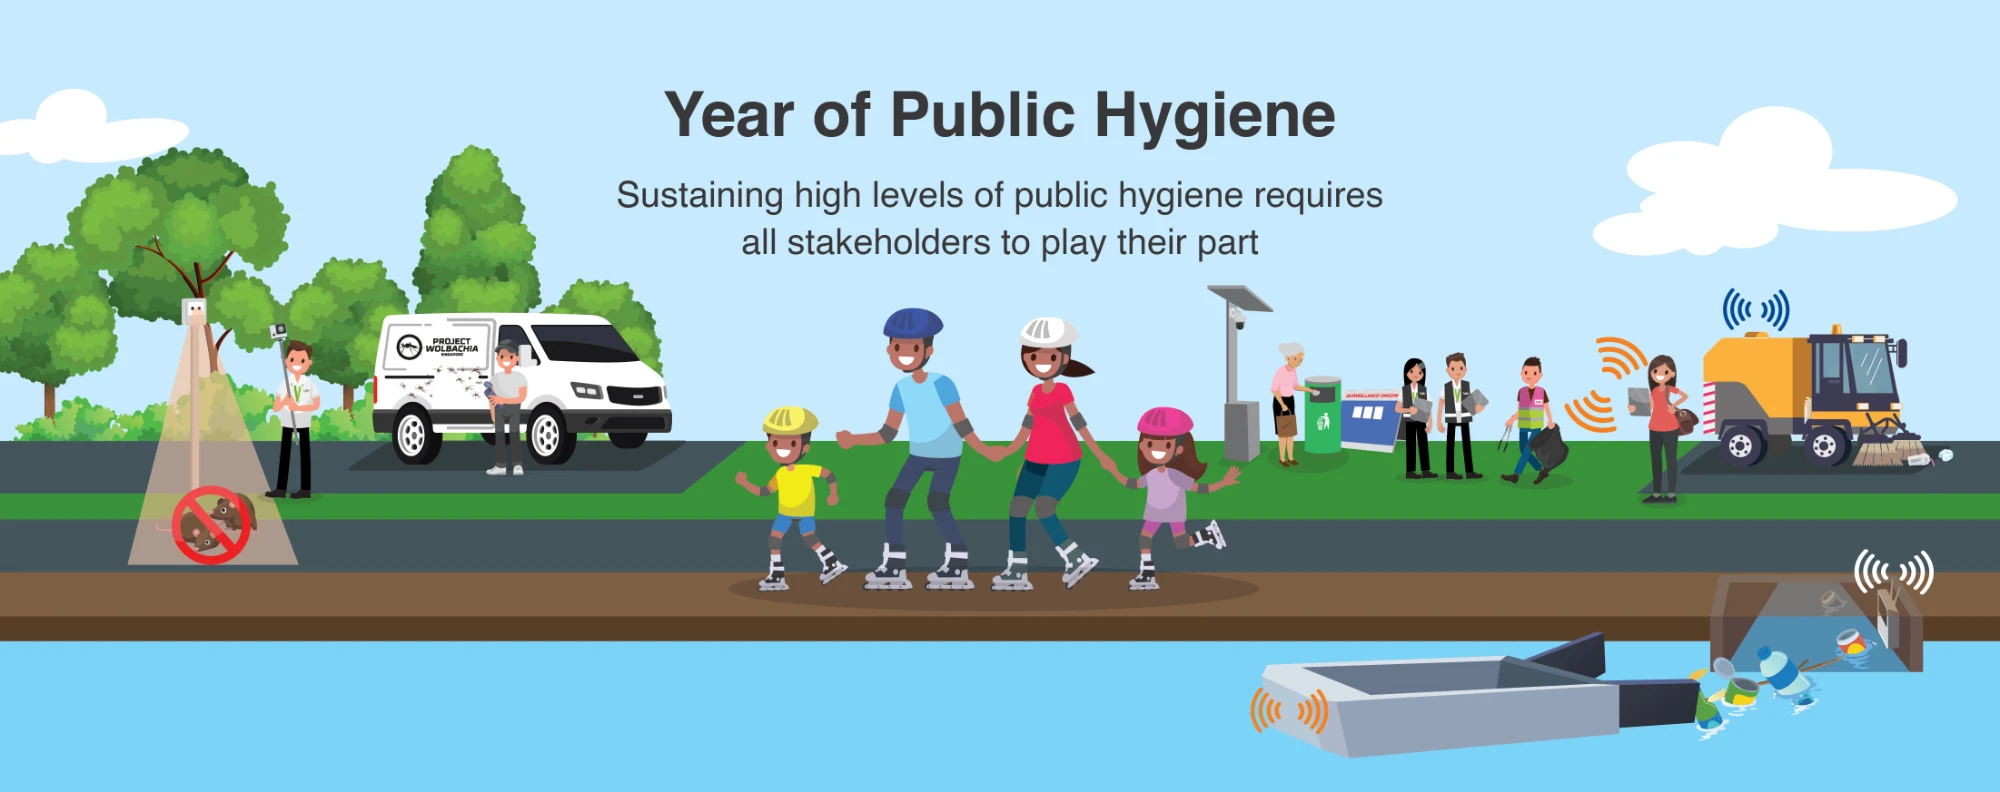 Year of Public Hygiene